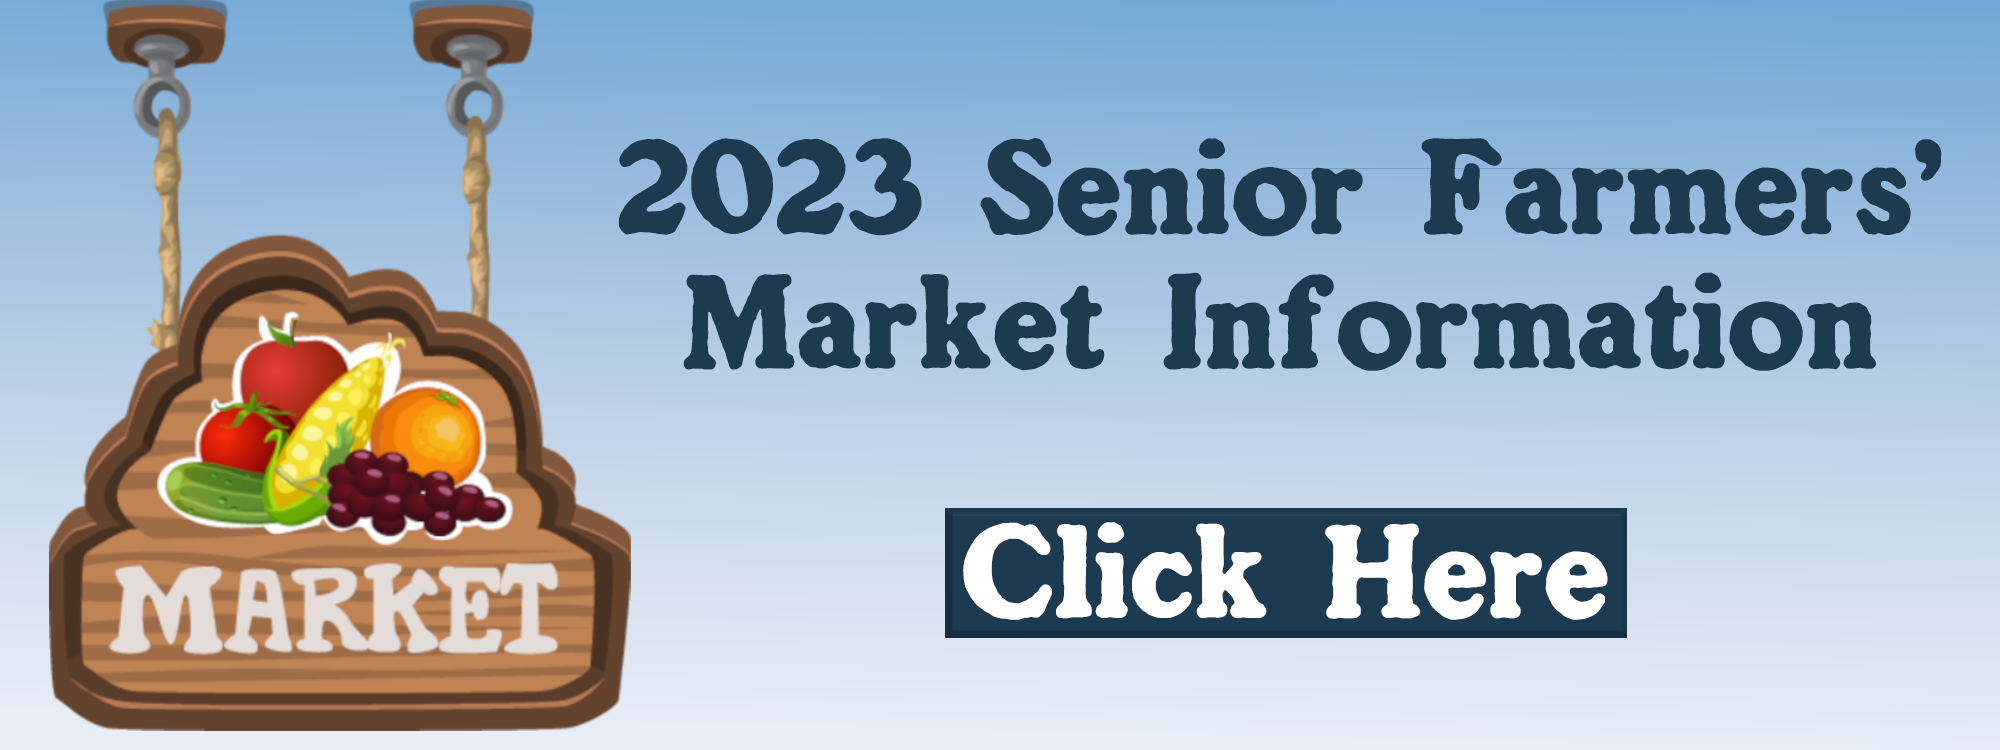 2023 Farmers Market